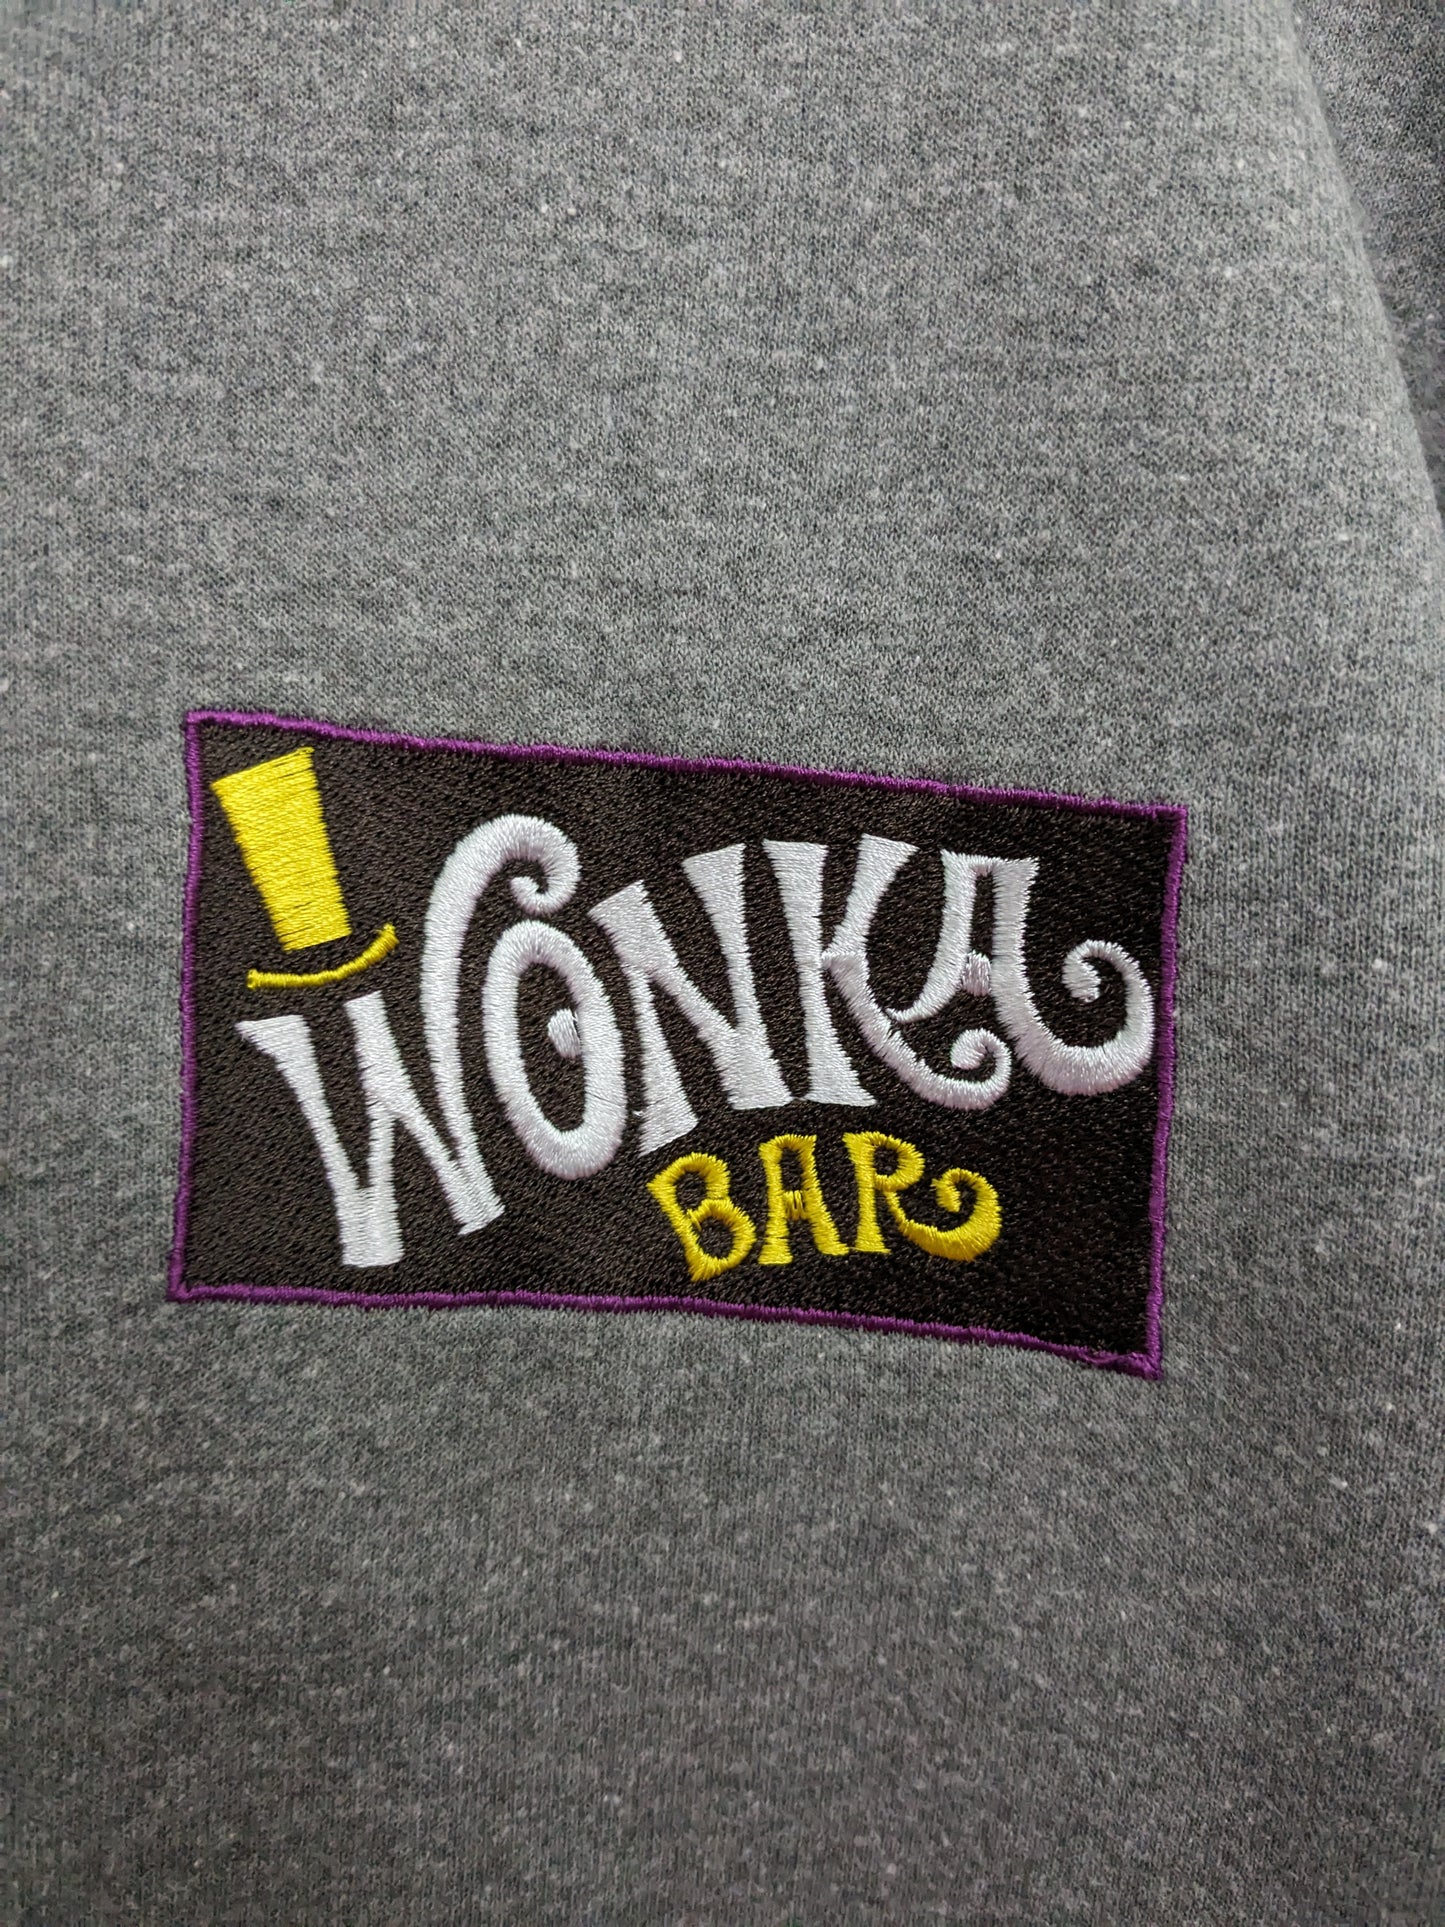 Custom Wonka Order for J. Amott